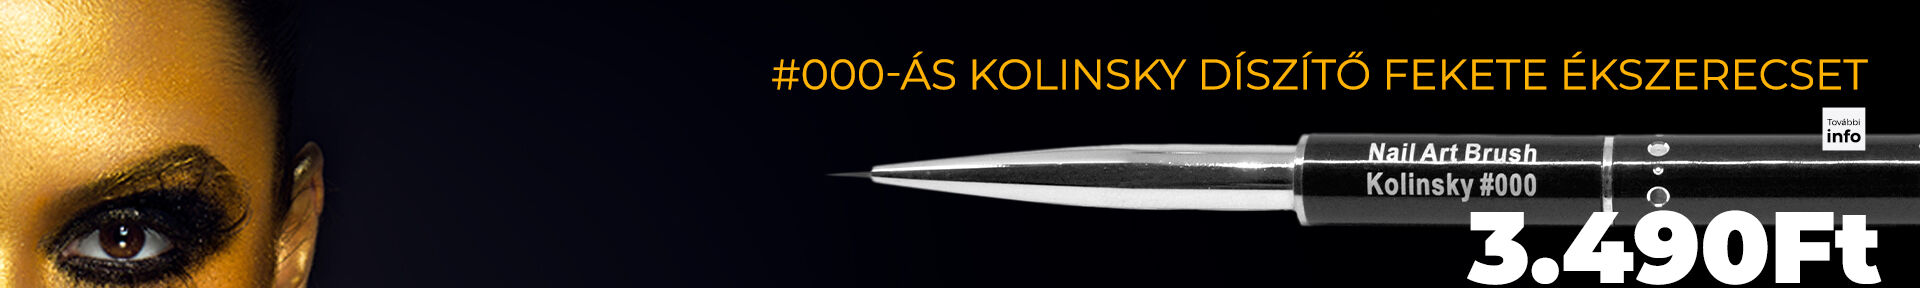 #000-ás Kolinsky díszítő fekete ékszerecset Vékony és apró minták megfestéséhez, kontúrozáshoz.